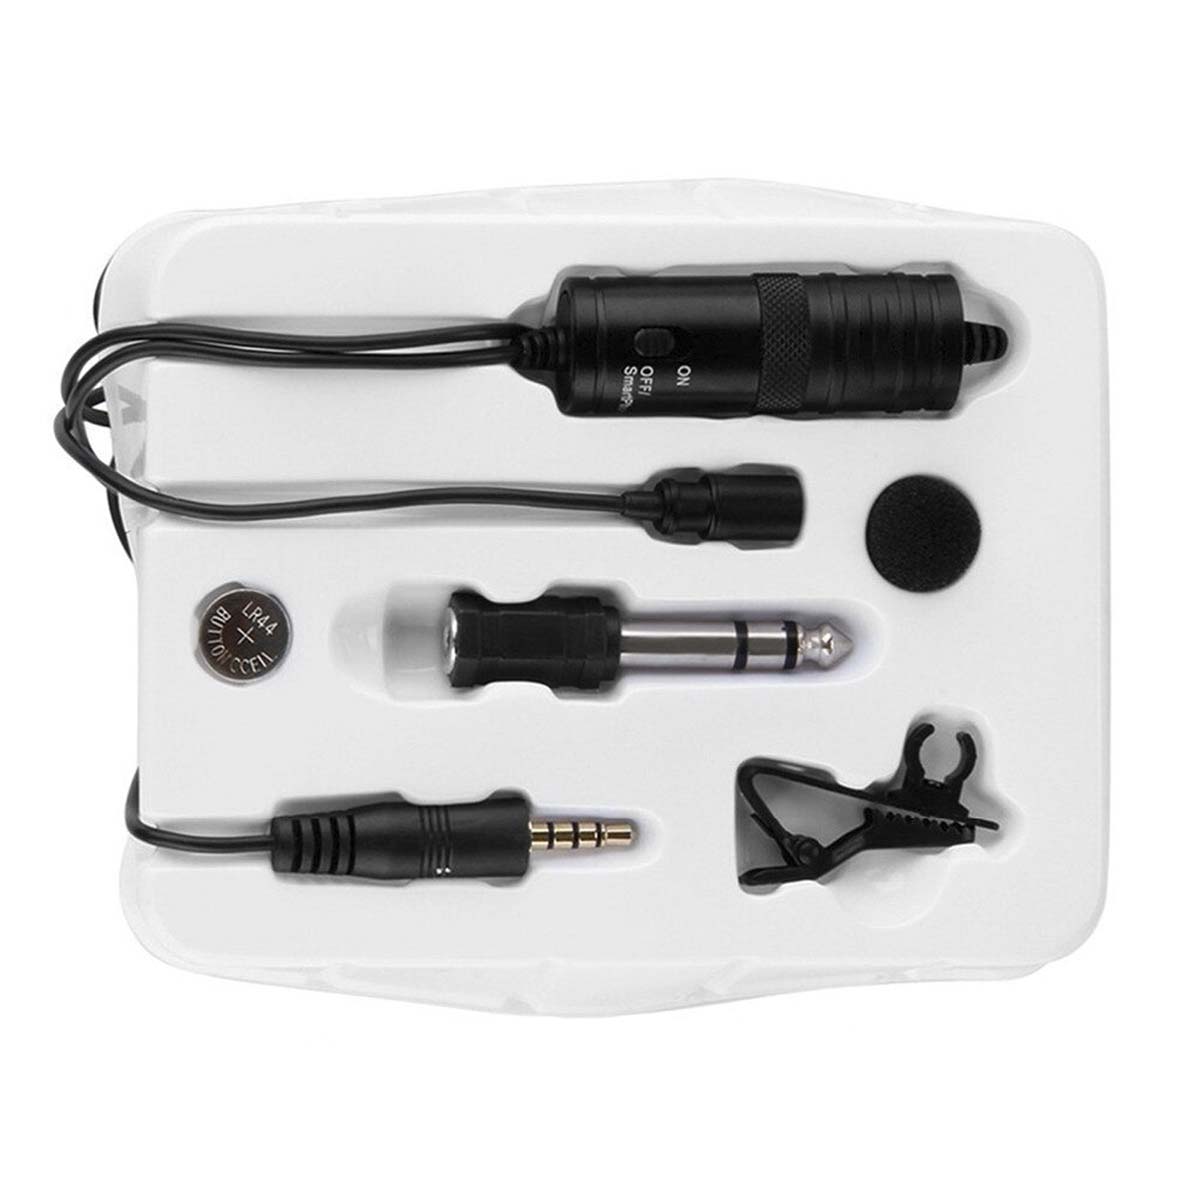 Всенаправленный петличный (на прищепке) микрофон BY-M1, длина кабеля 6 метров, цвет черный.